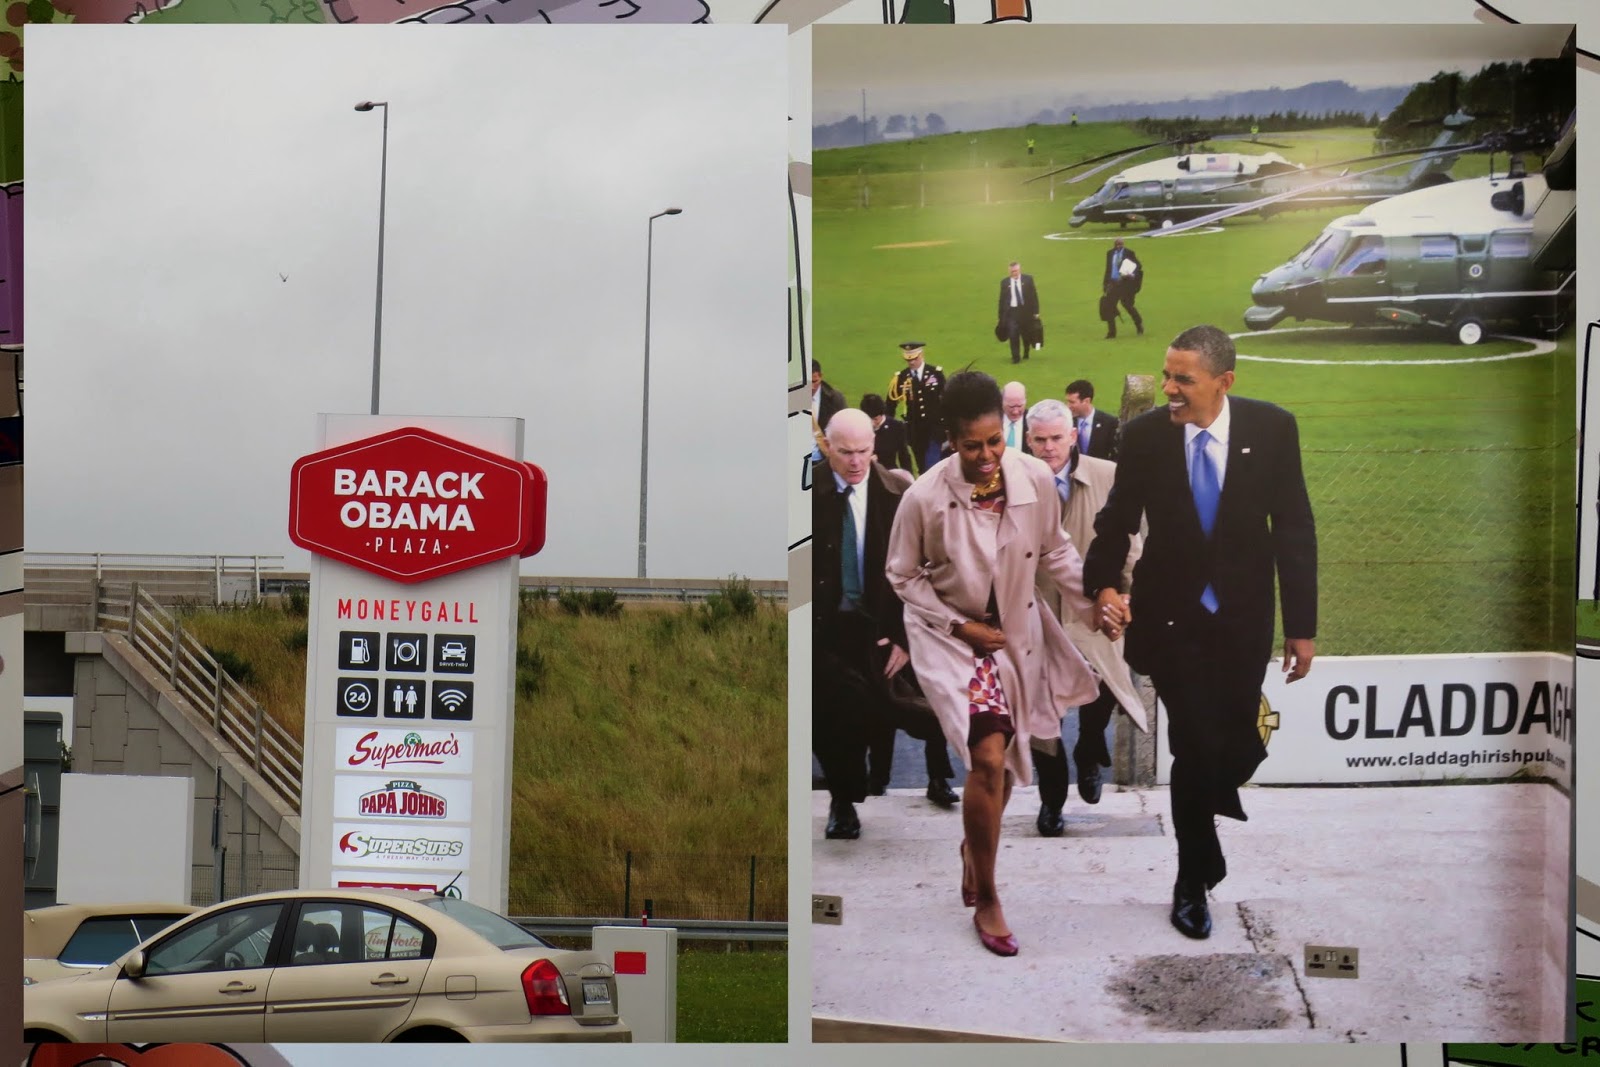 Dublin to Clare Ireland: Barack Obama Plaza